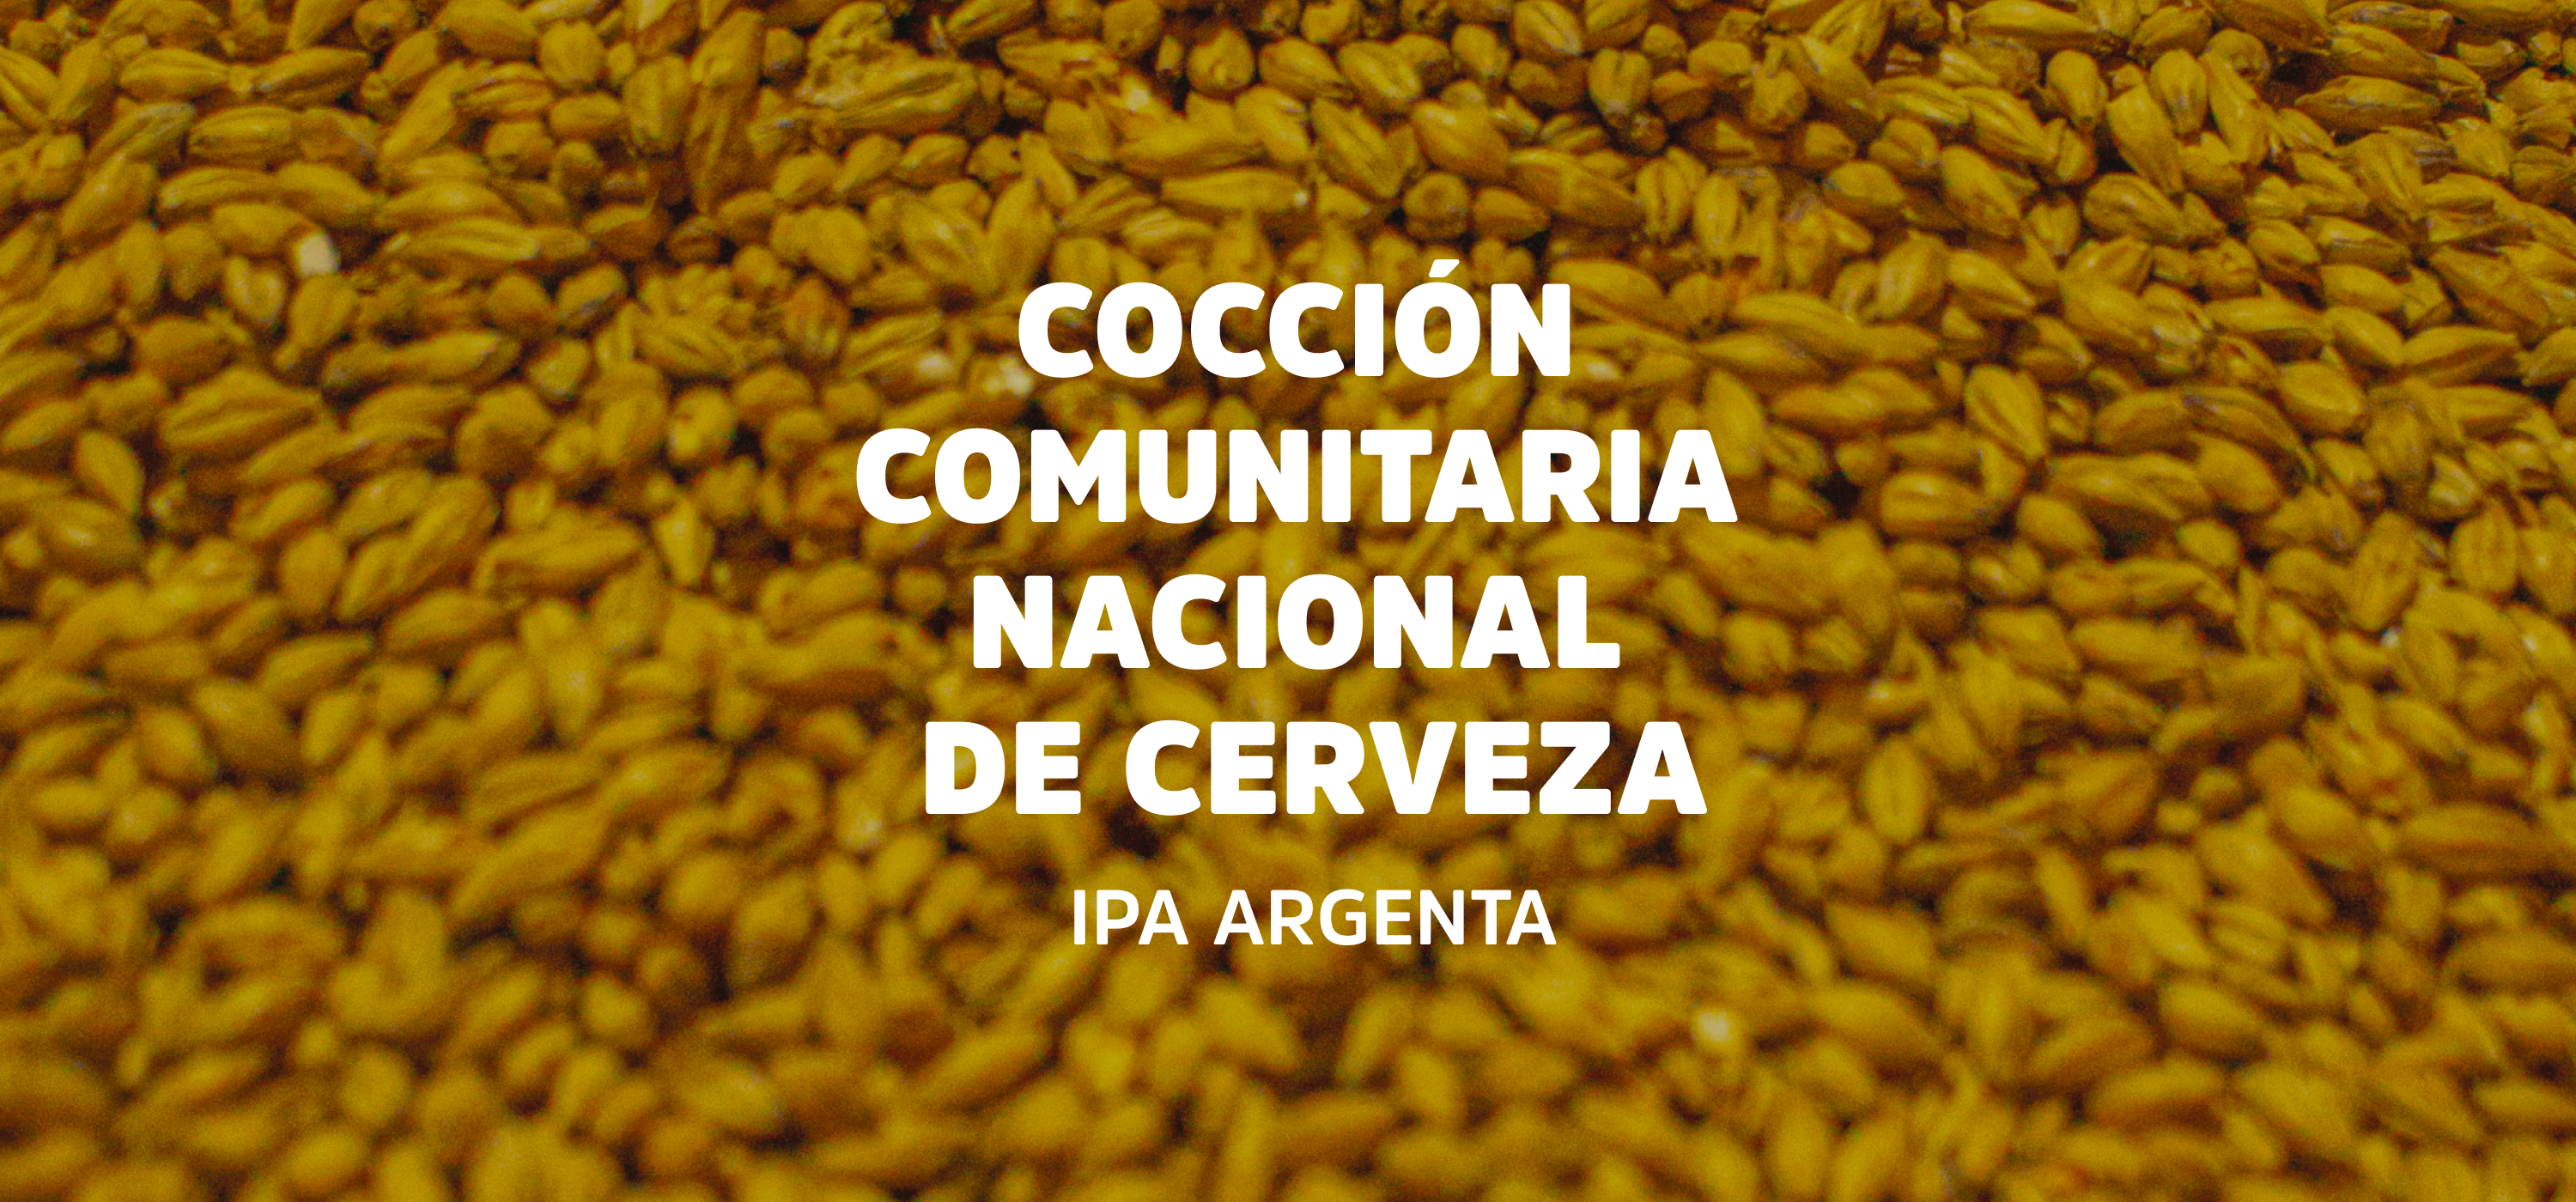 IPA ARGENTA: cerveceros artesanales unidos en una misma receta